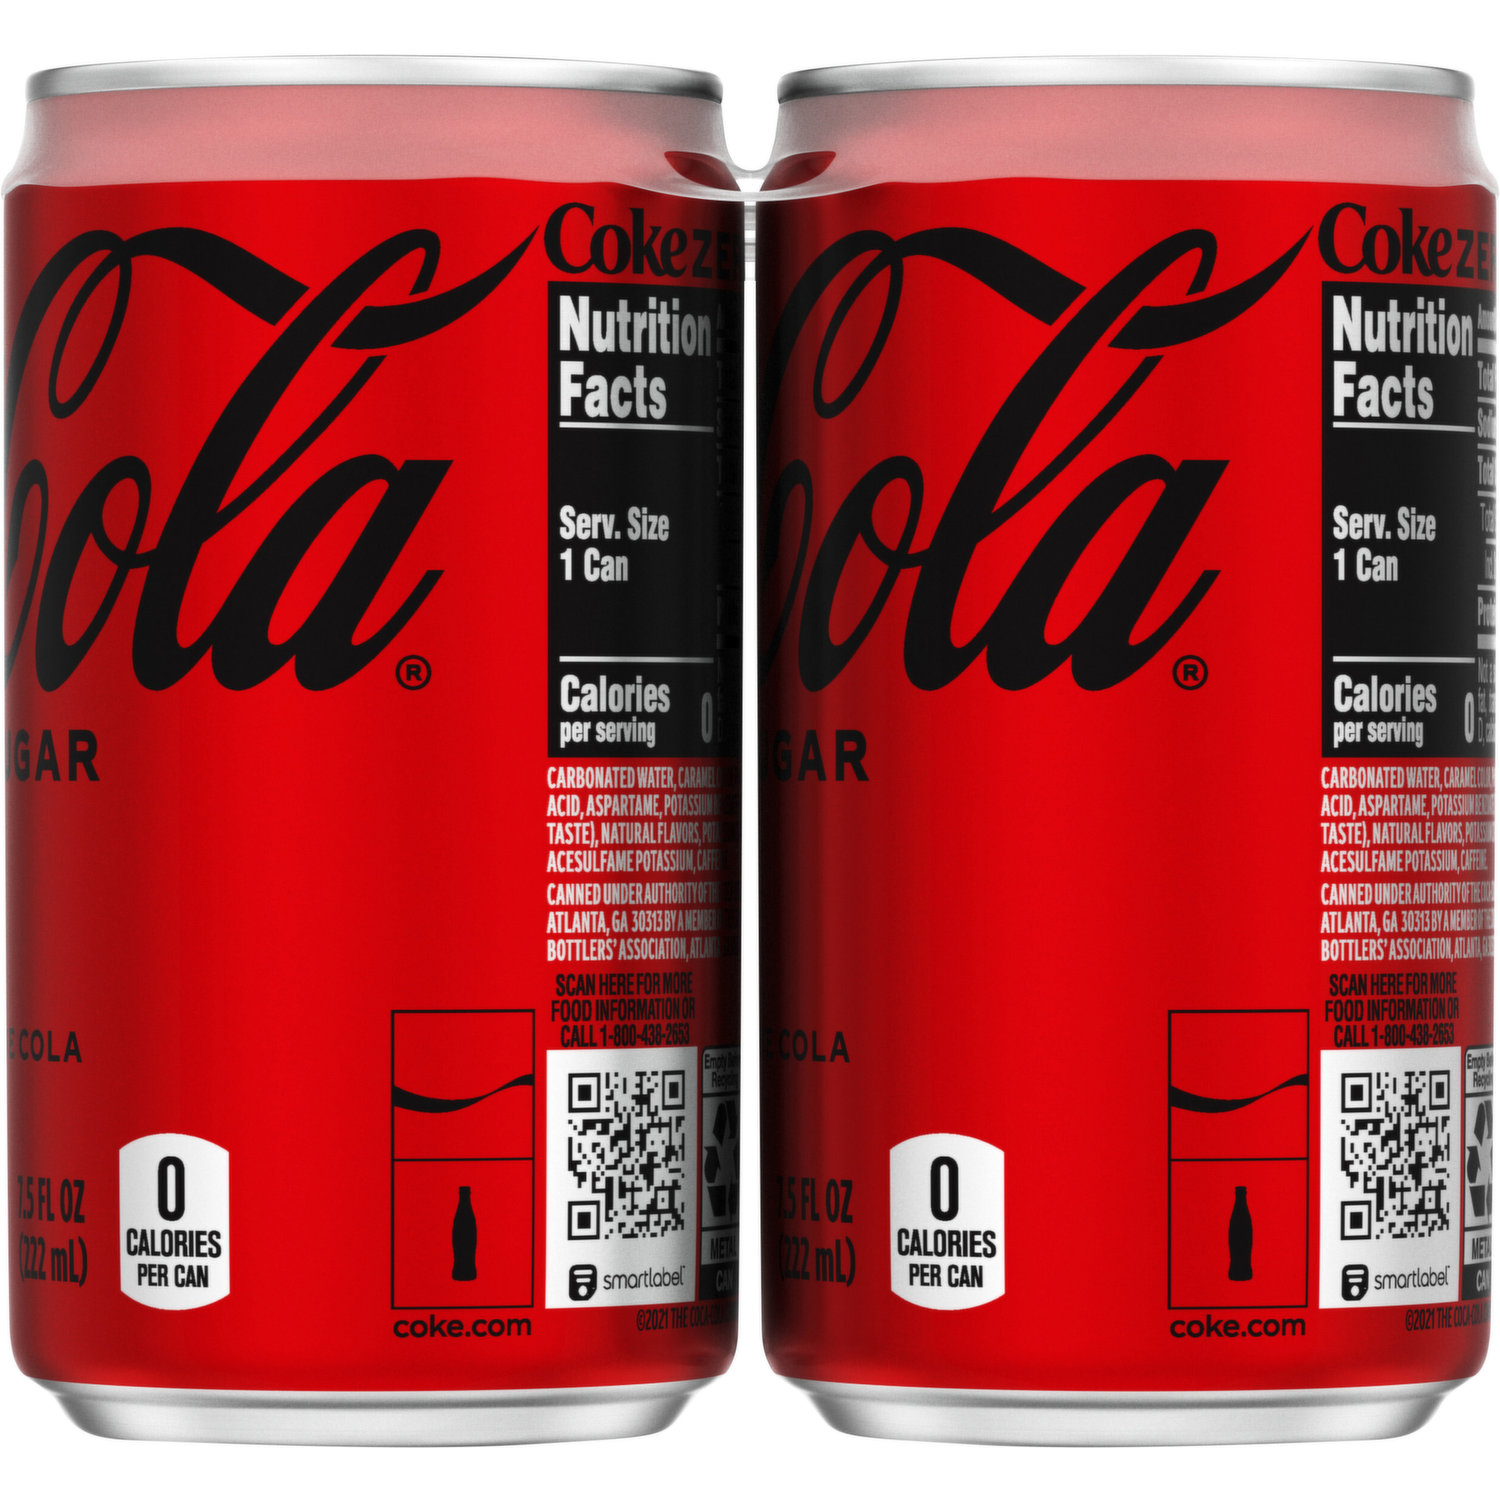 Coca-Cola Sin Azúcar 3,0 lt. - miCoca-Cola.cl